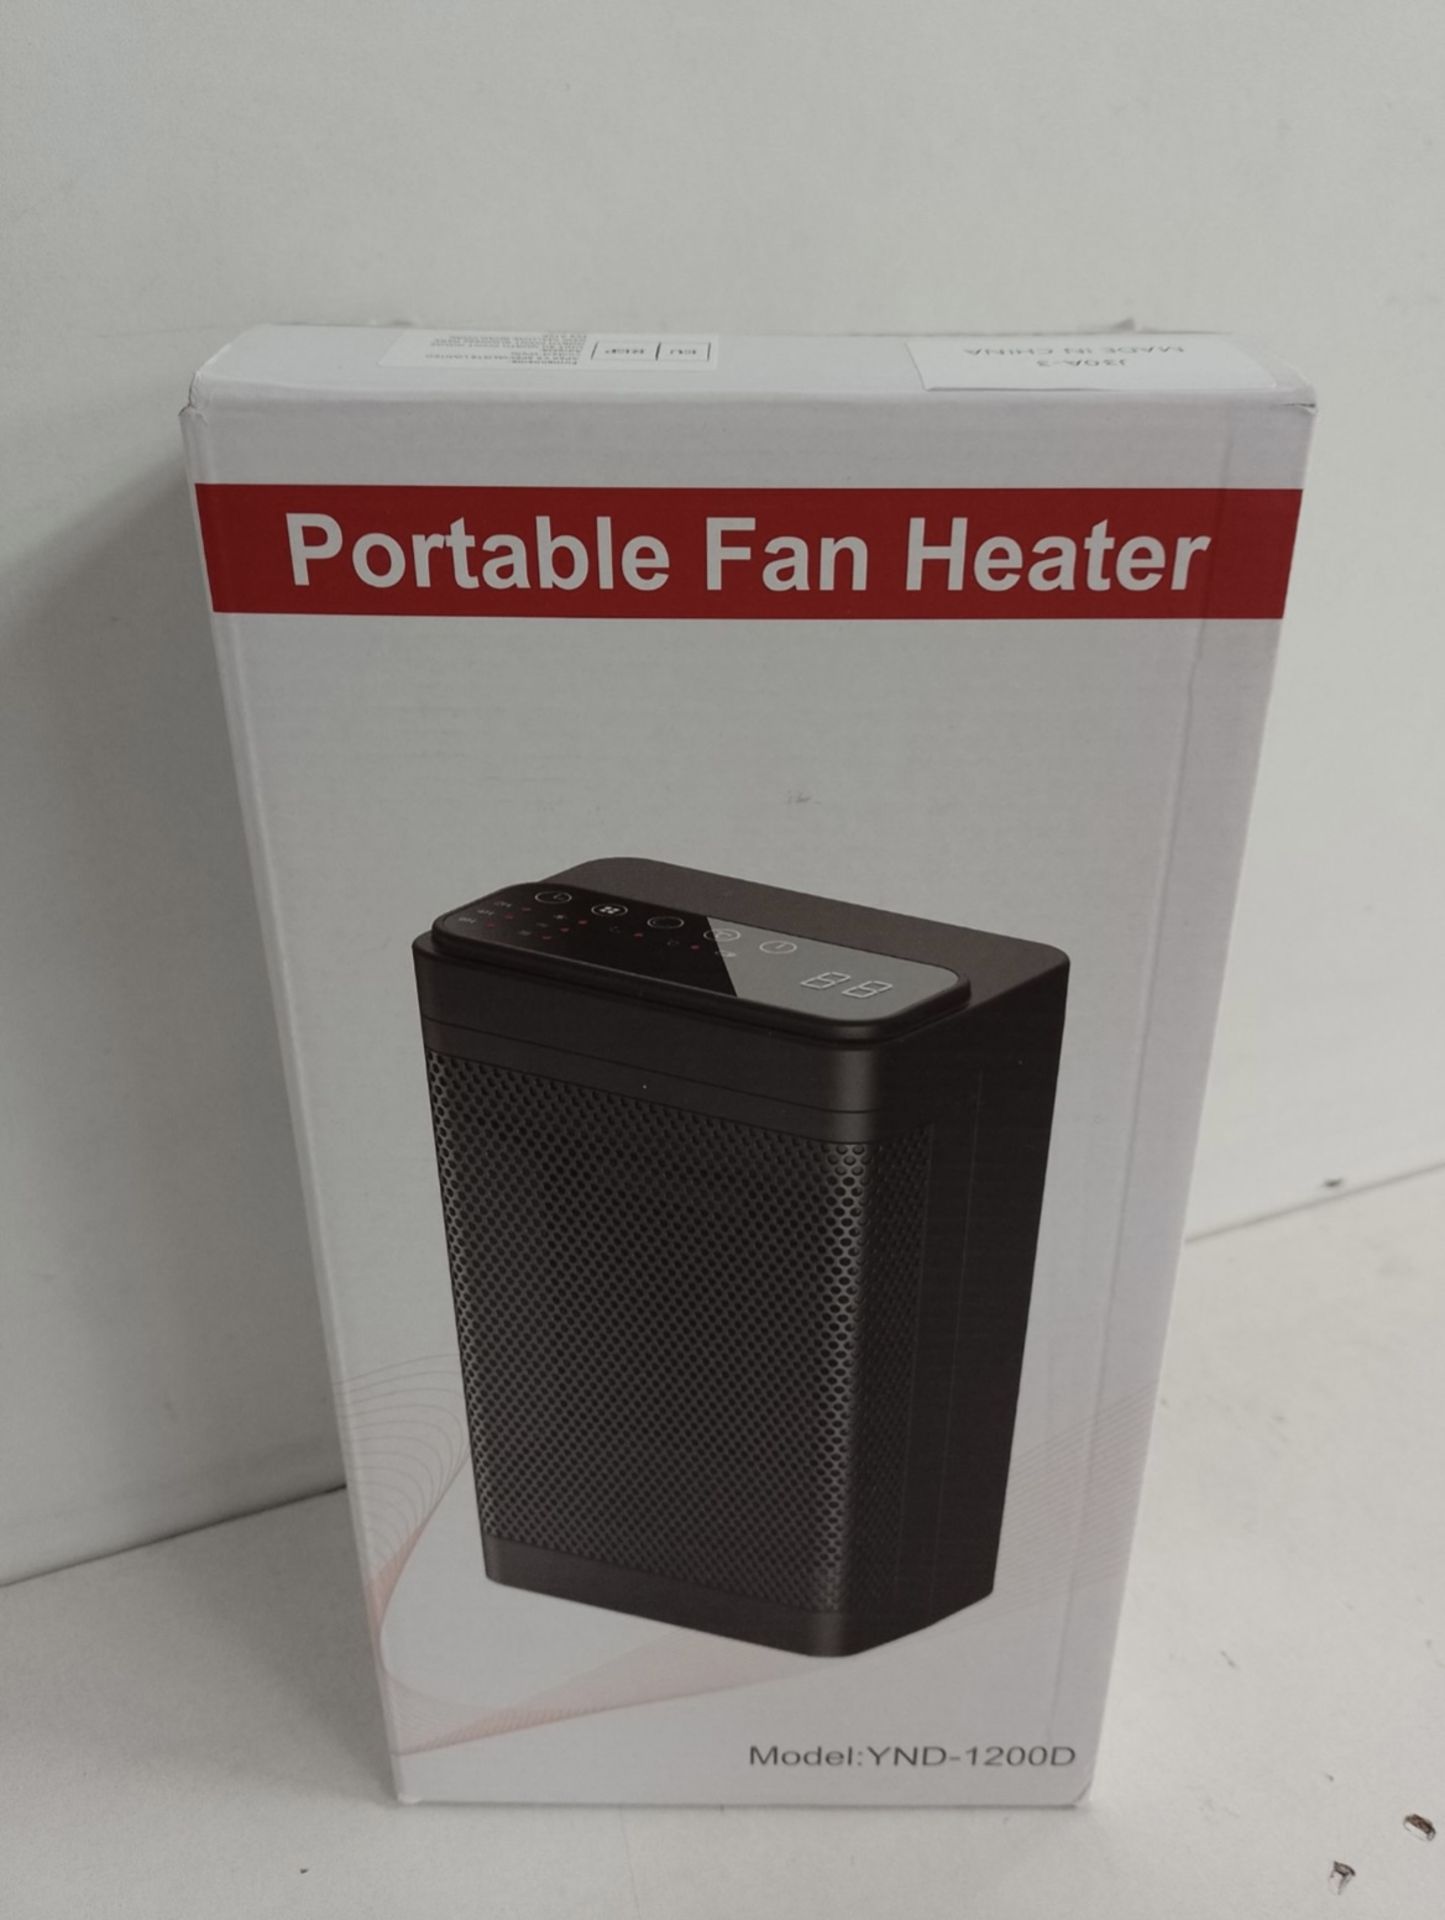 Portable Fan Heater